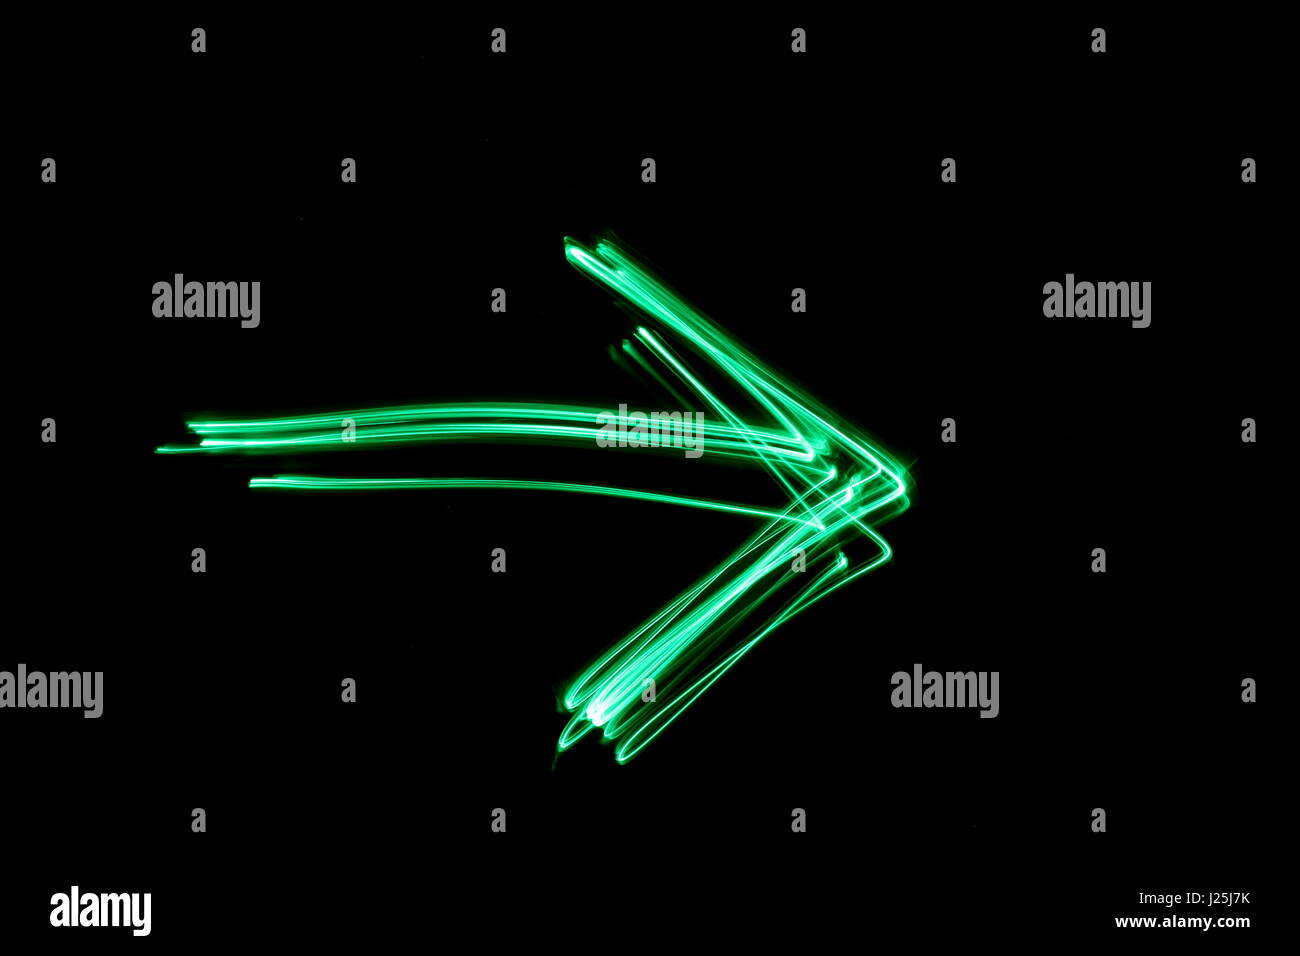 Una lunga esposizione fotografia di neon di colore verde in un astratto profilo a freccia contro uno sfondo nero. Luce fotografia pittura, di colore in astratto Foto Stock